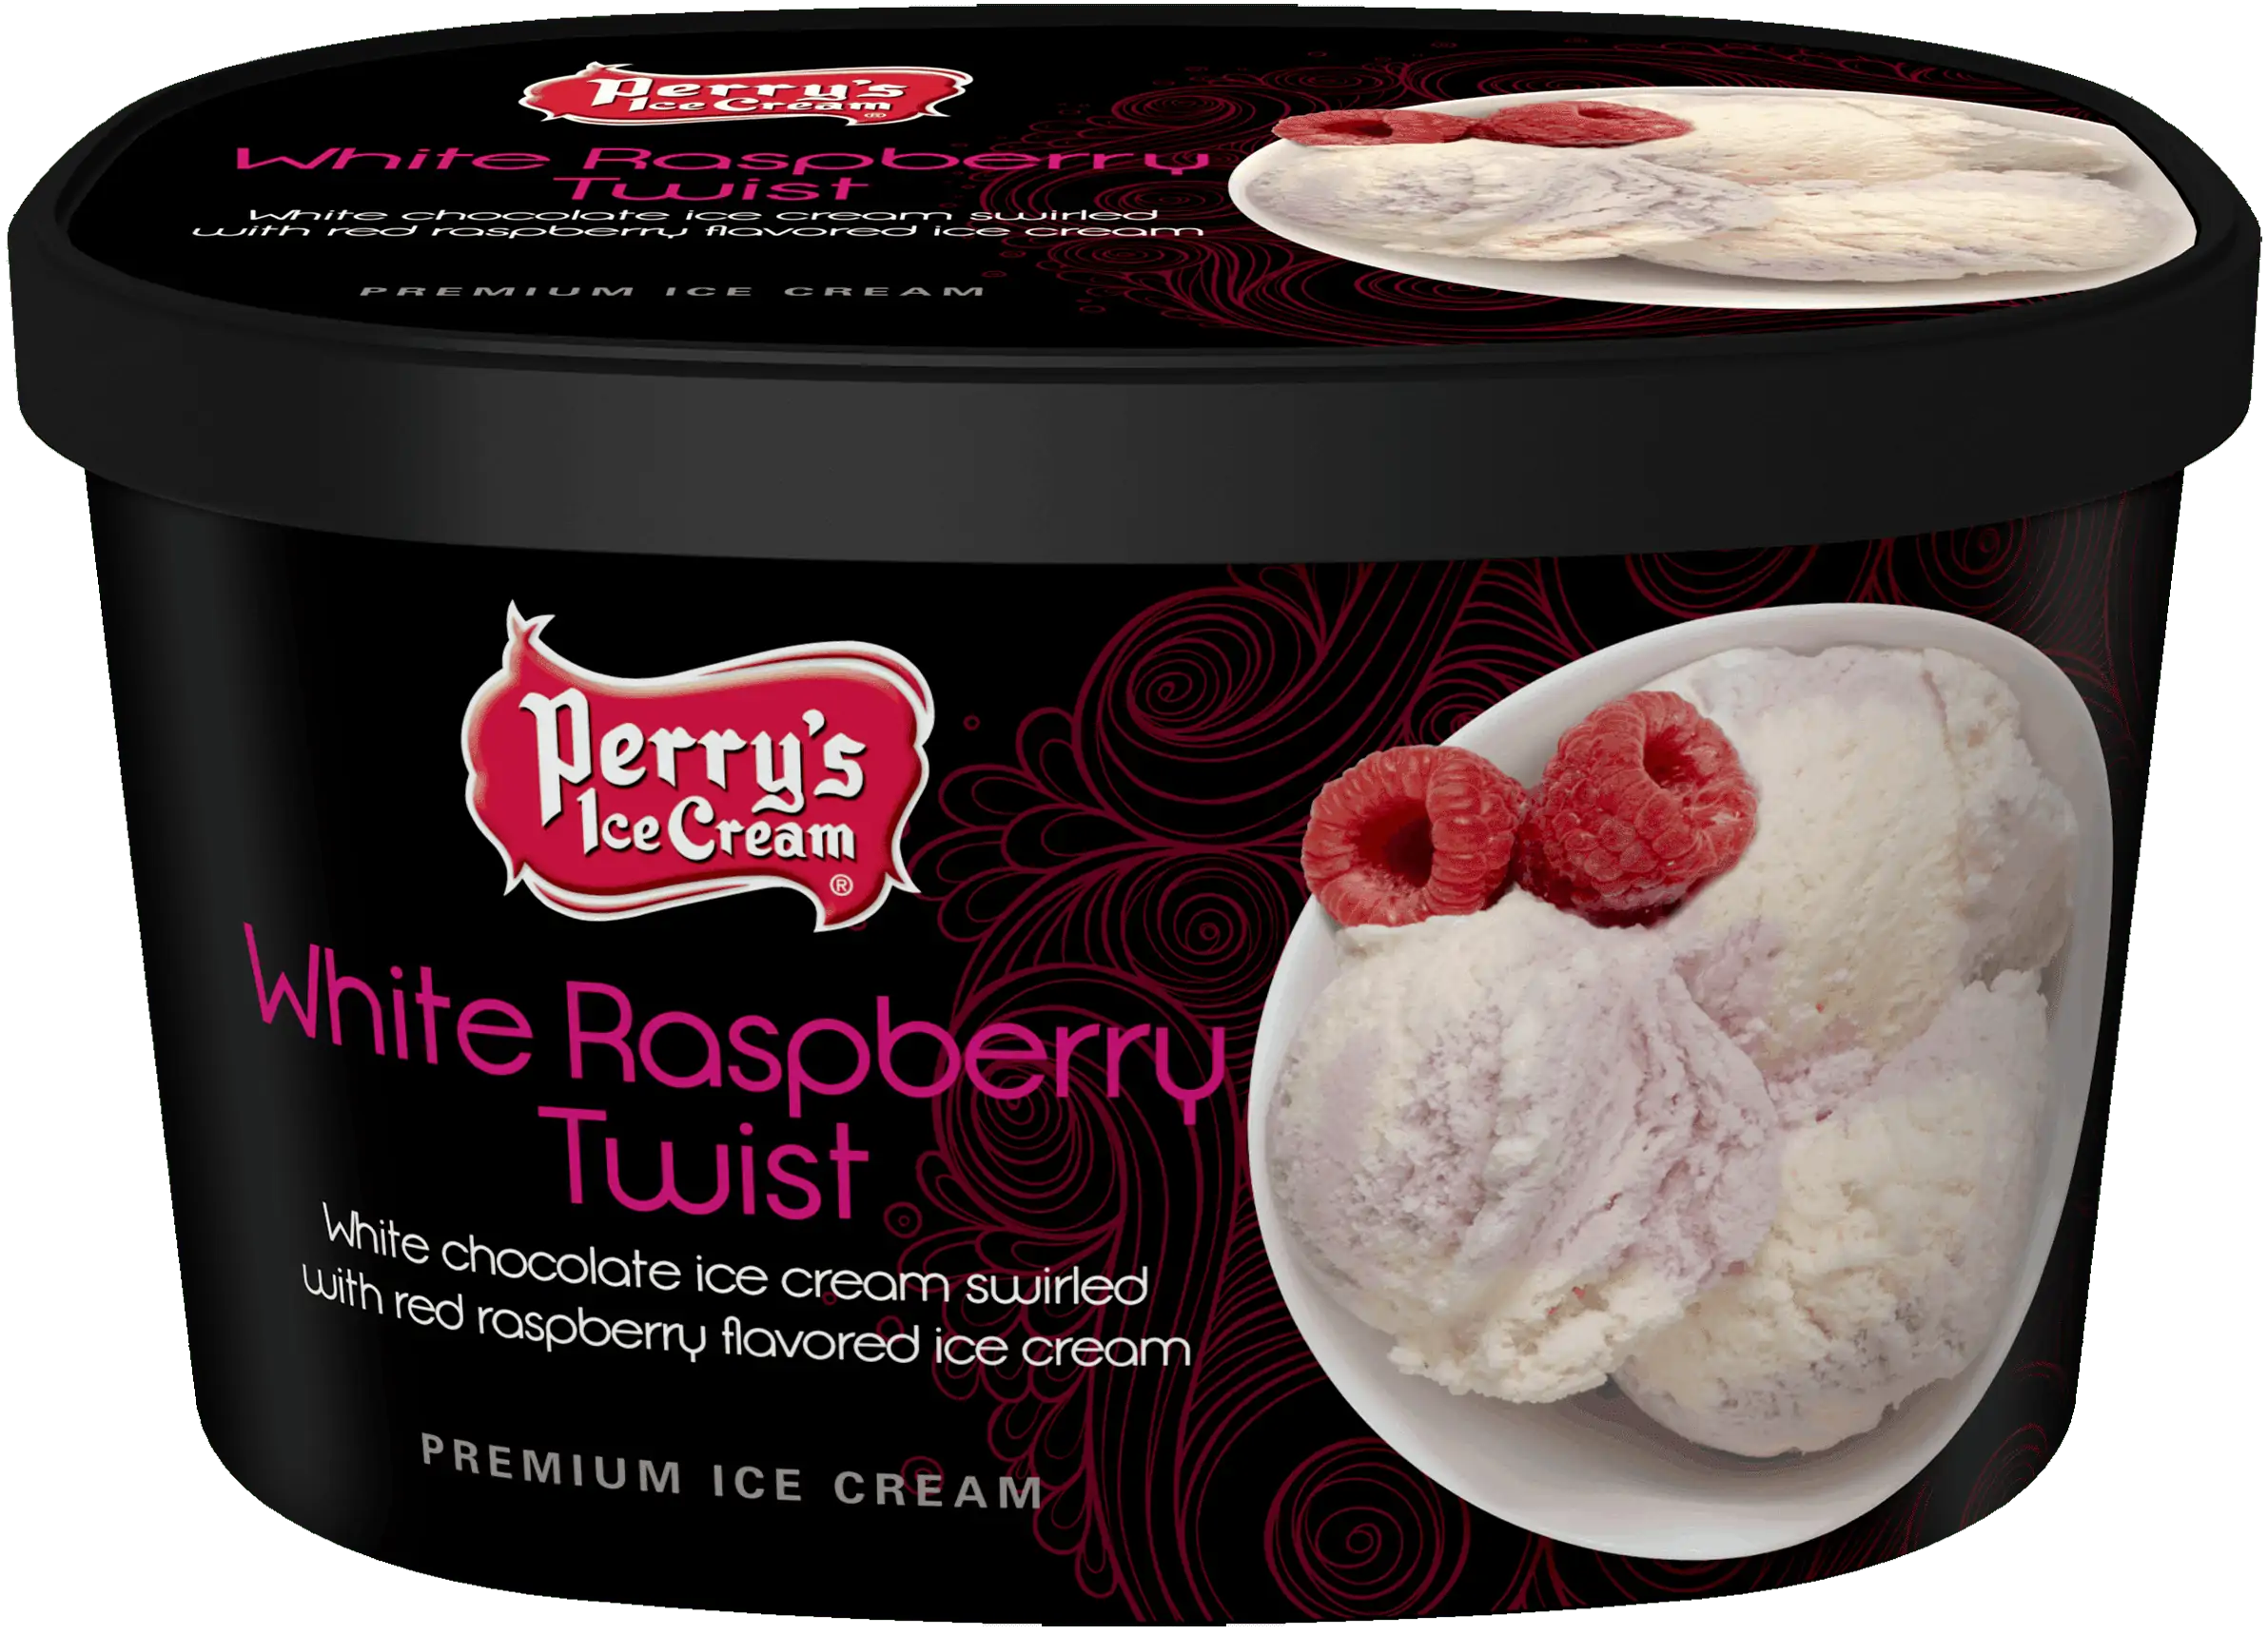 White Raspberry Twist Ice Cream - Perry's Ice Cream | Products